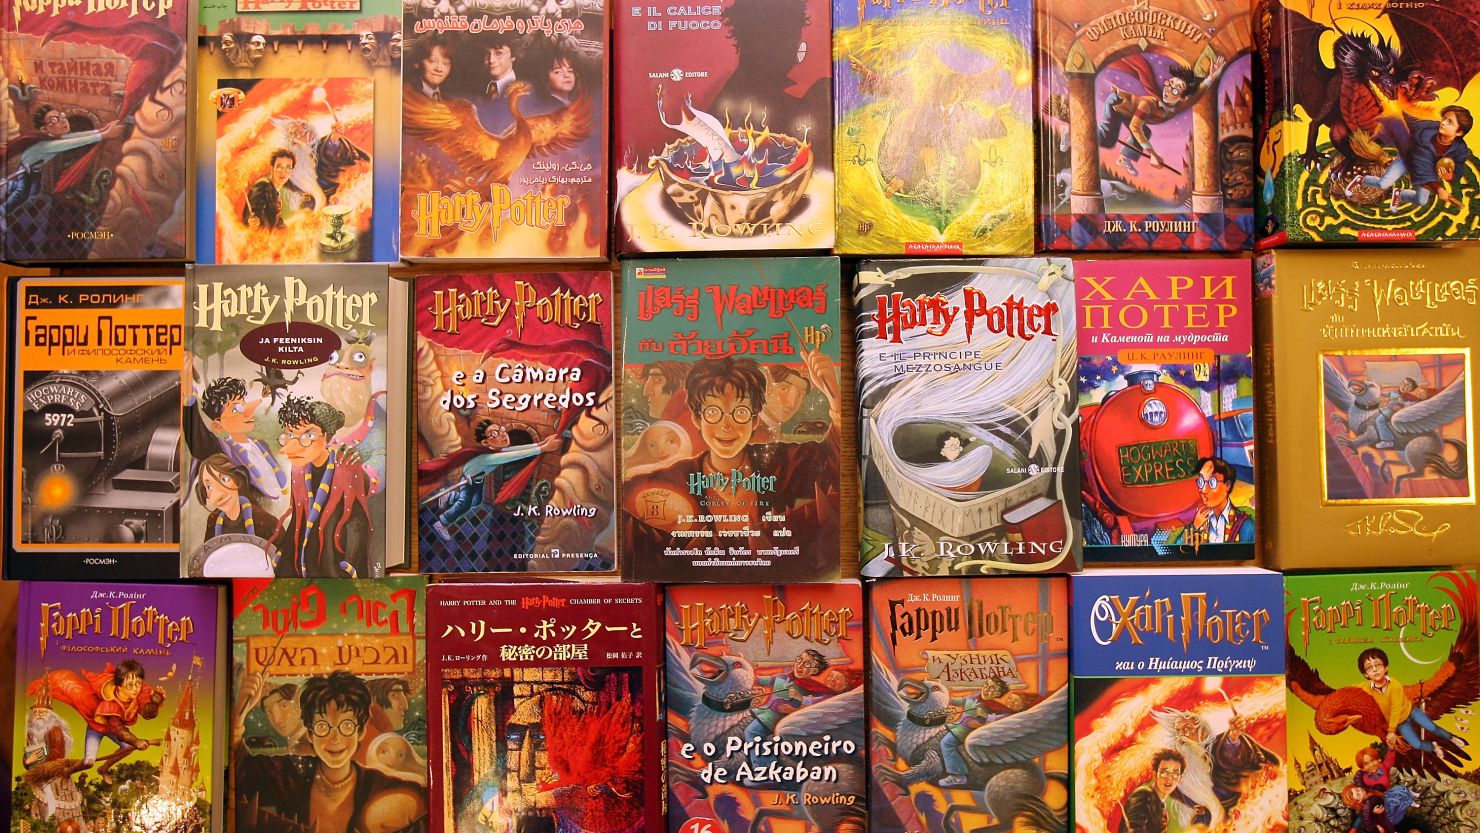 Catholic school removes 'Harry Potter' books from shelves